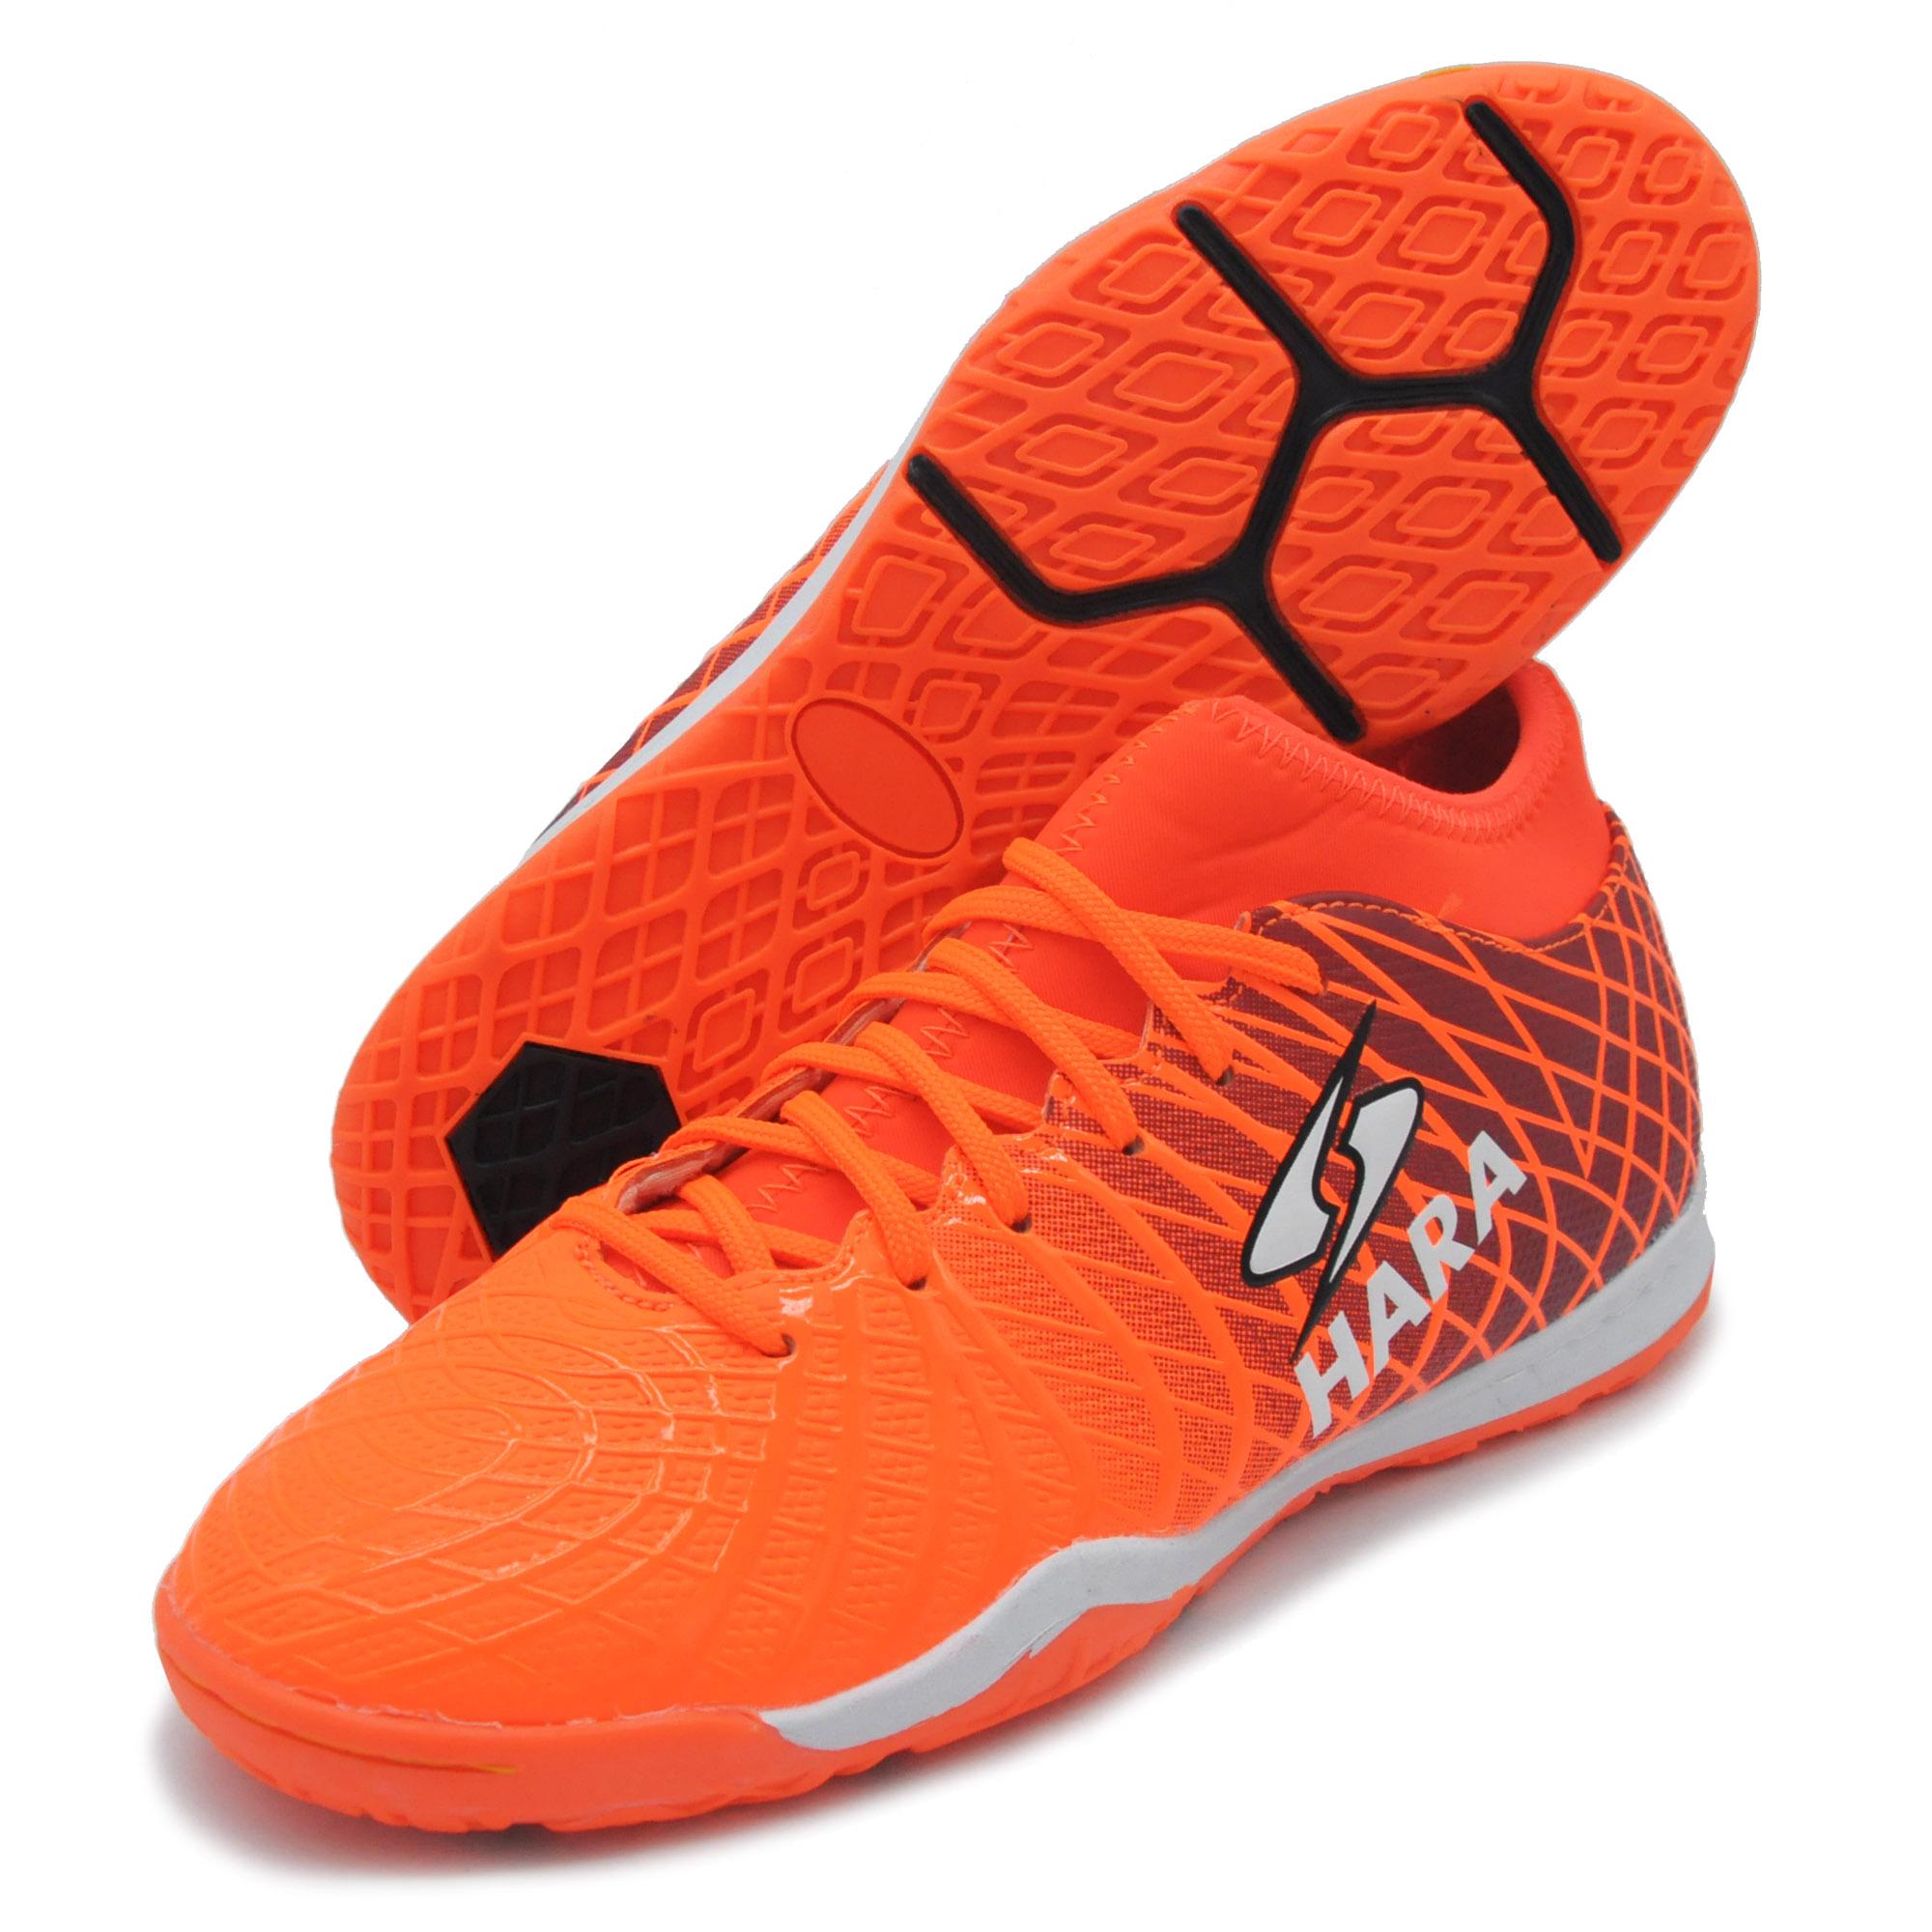 HARA ลดราคาพิเศษ 39-40 รองเท้าฟุตซอล หุ้มข้อ รุ่น FS88X3 สีส้ม รองเท้าฟุตซอลเด็ก